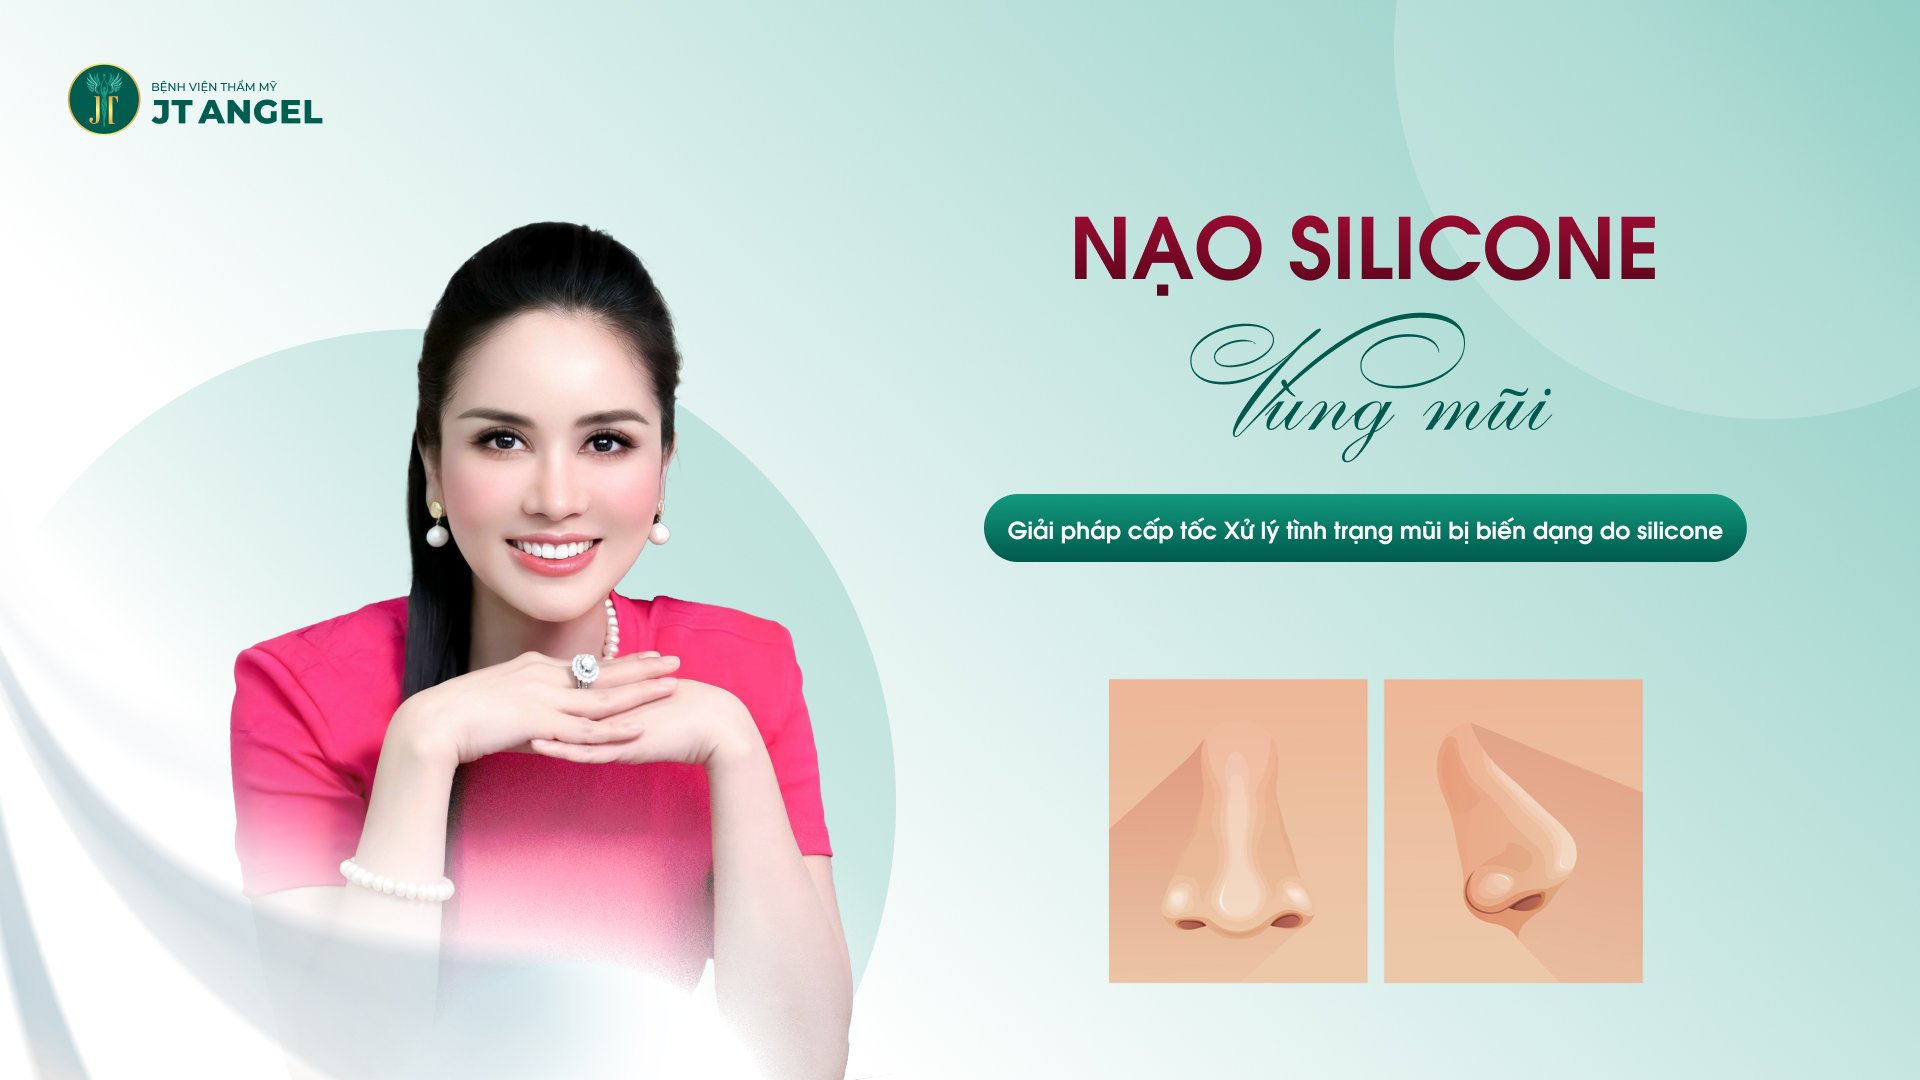 Nạo silicone vùng mũi: Giải pháp cấp tốc xử lý tình trạng mũi bị biến dạng do silicon